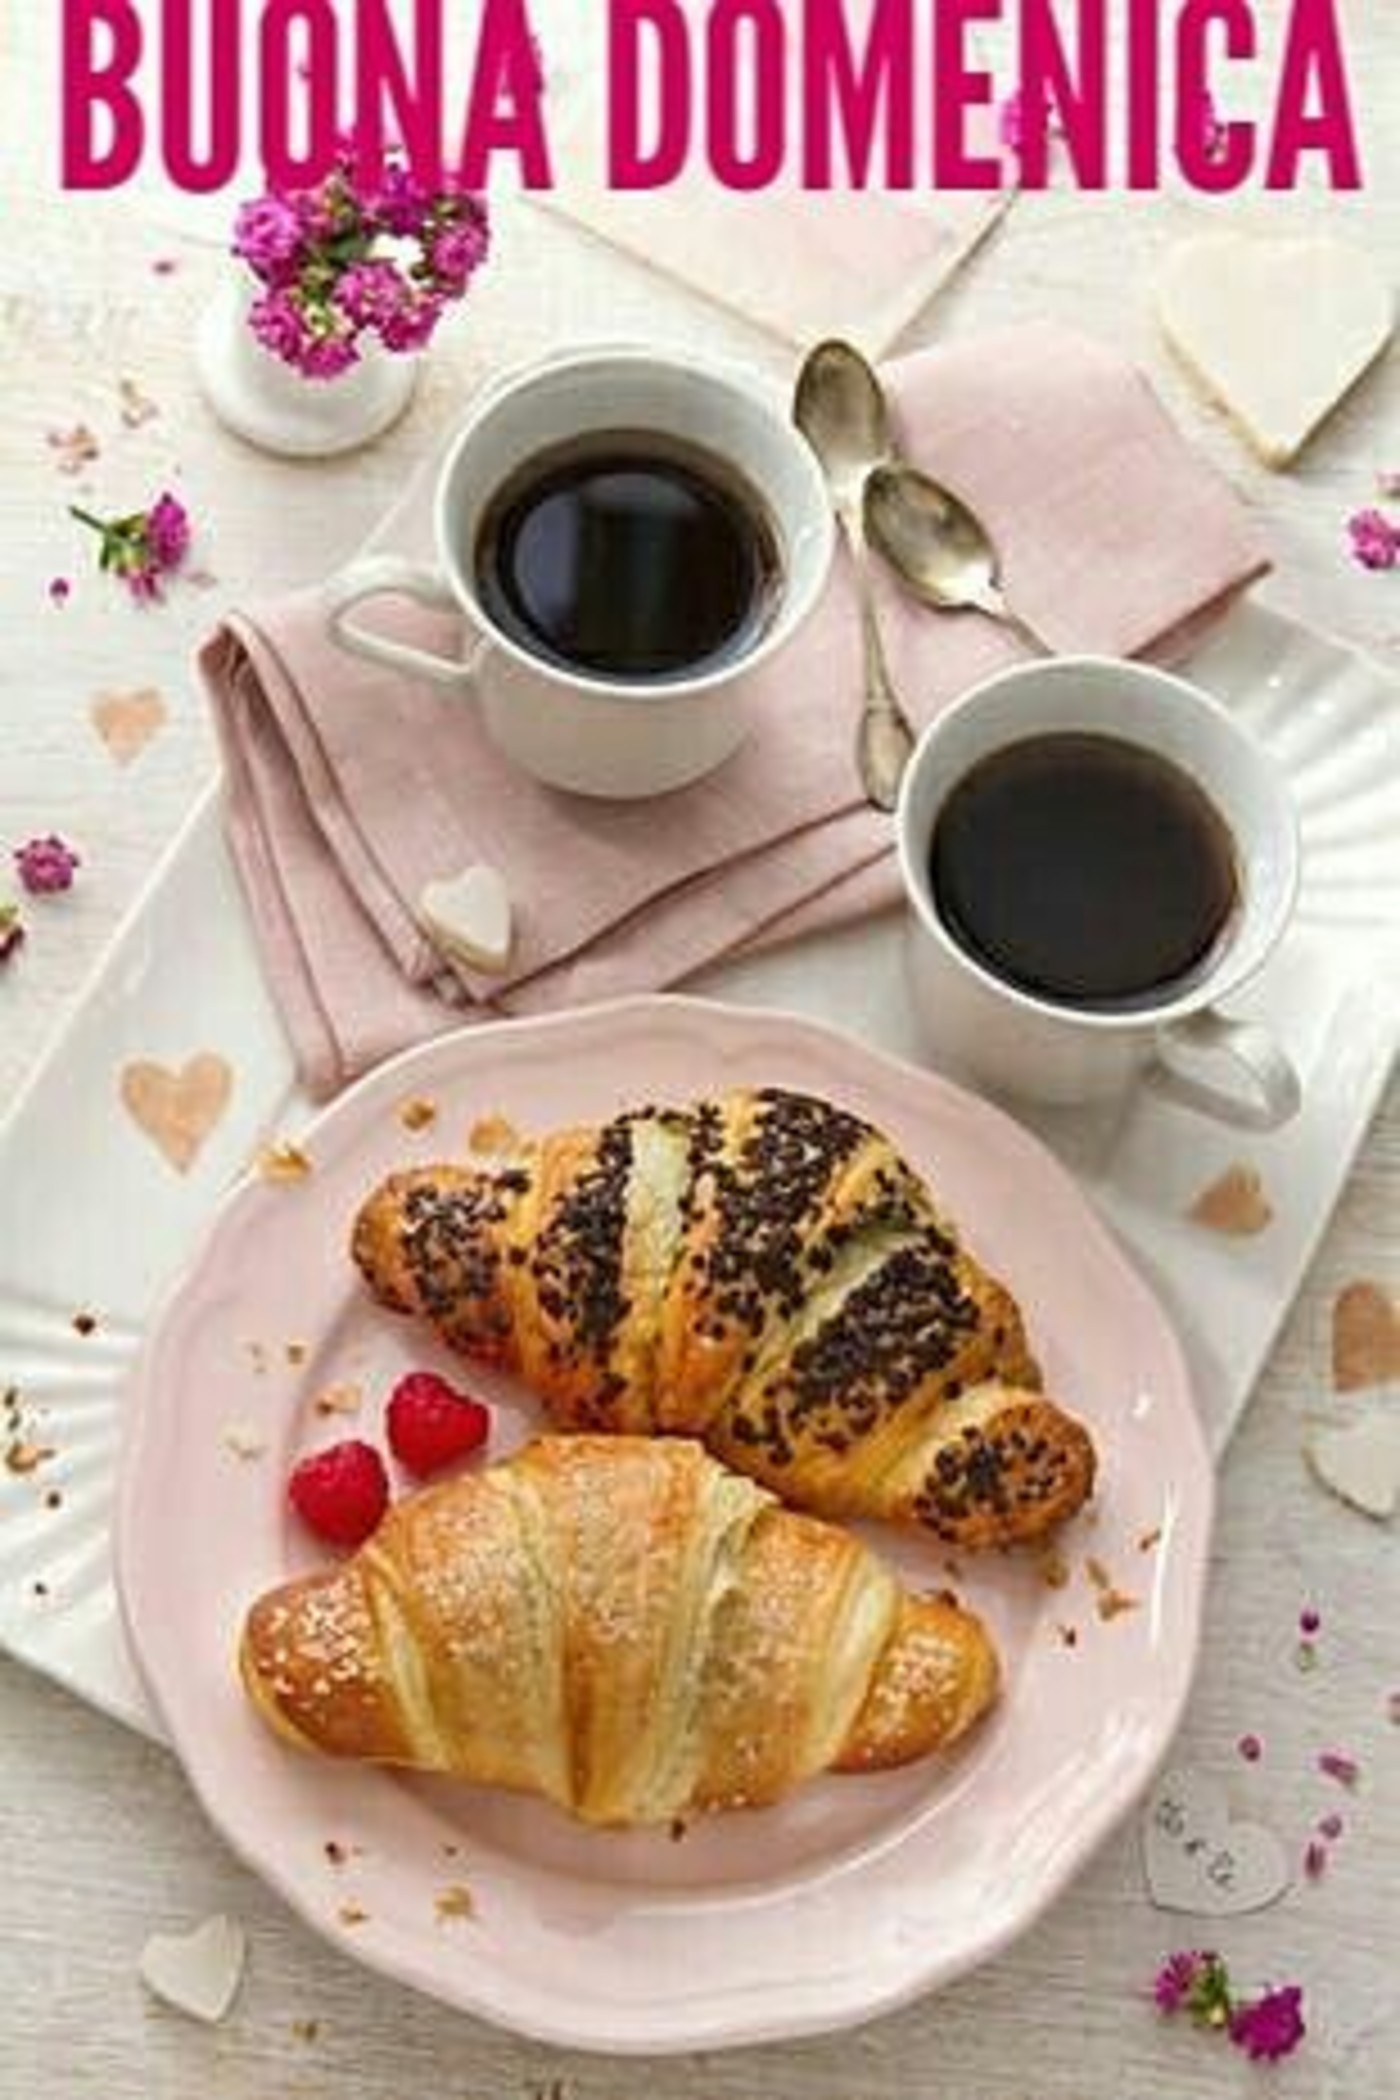 Buona domenica e buona colazione (1)